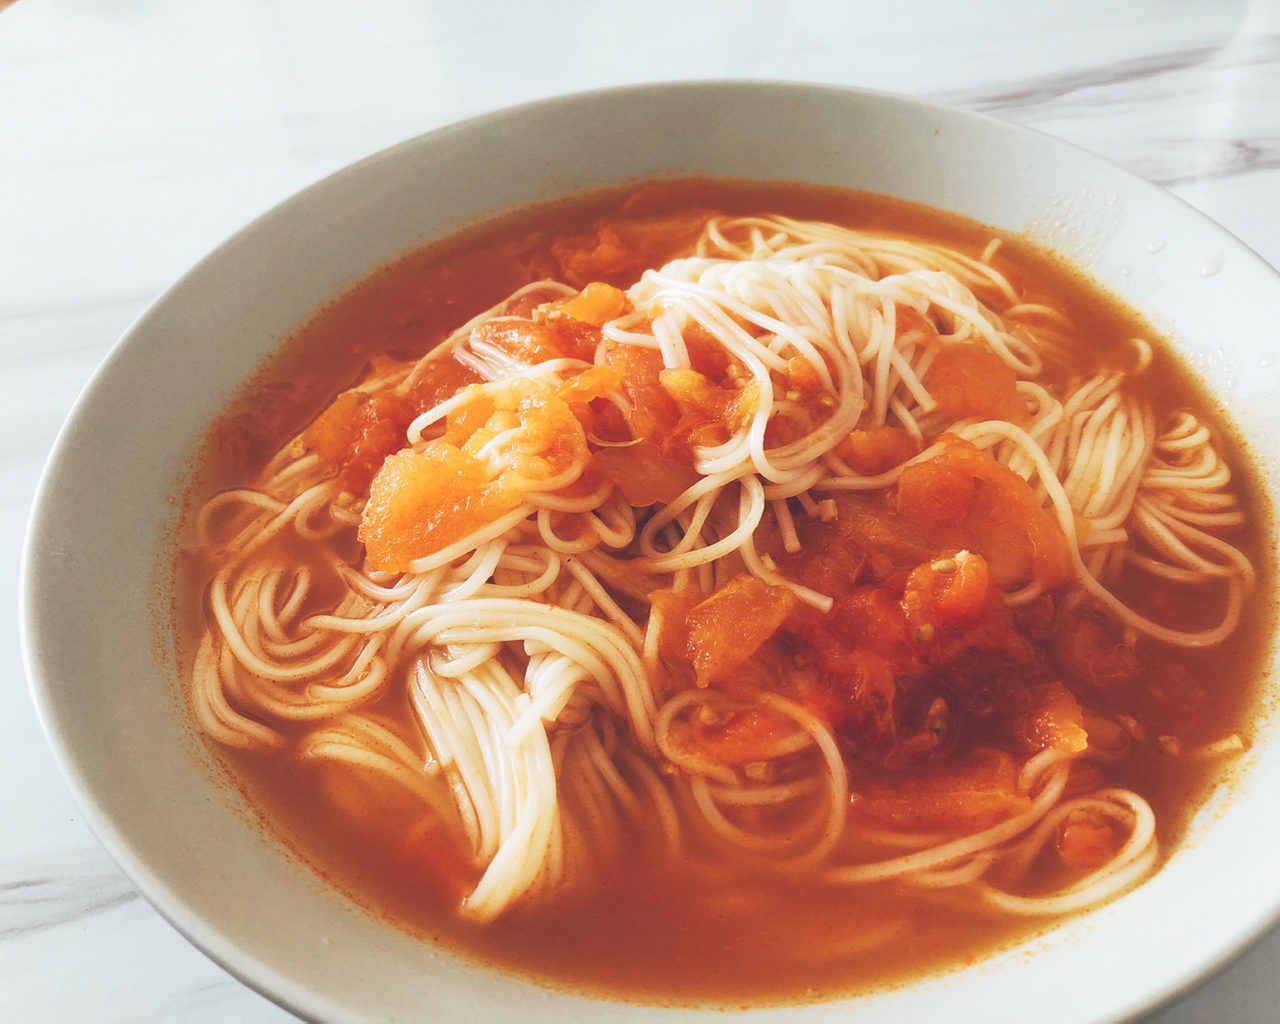 西红柿热汤面的做法